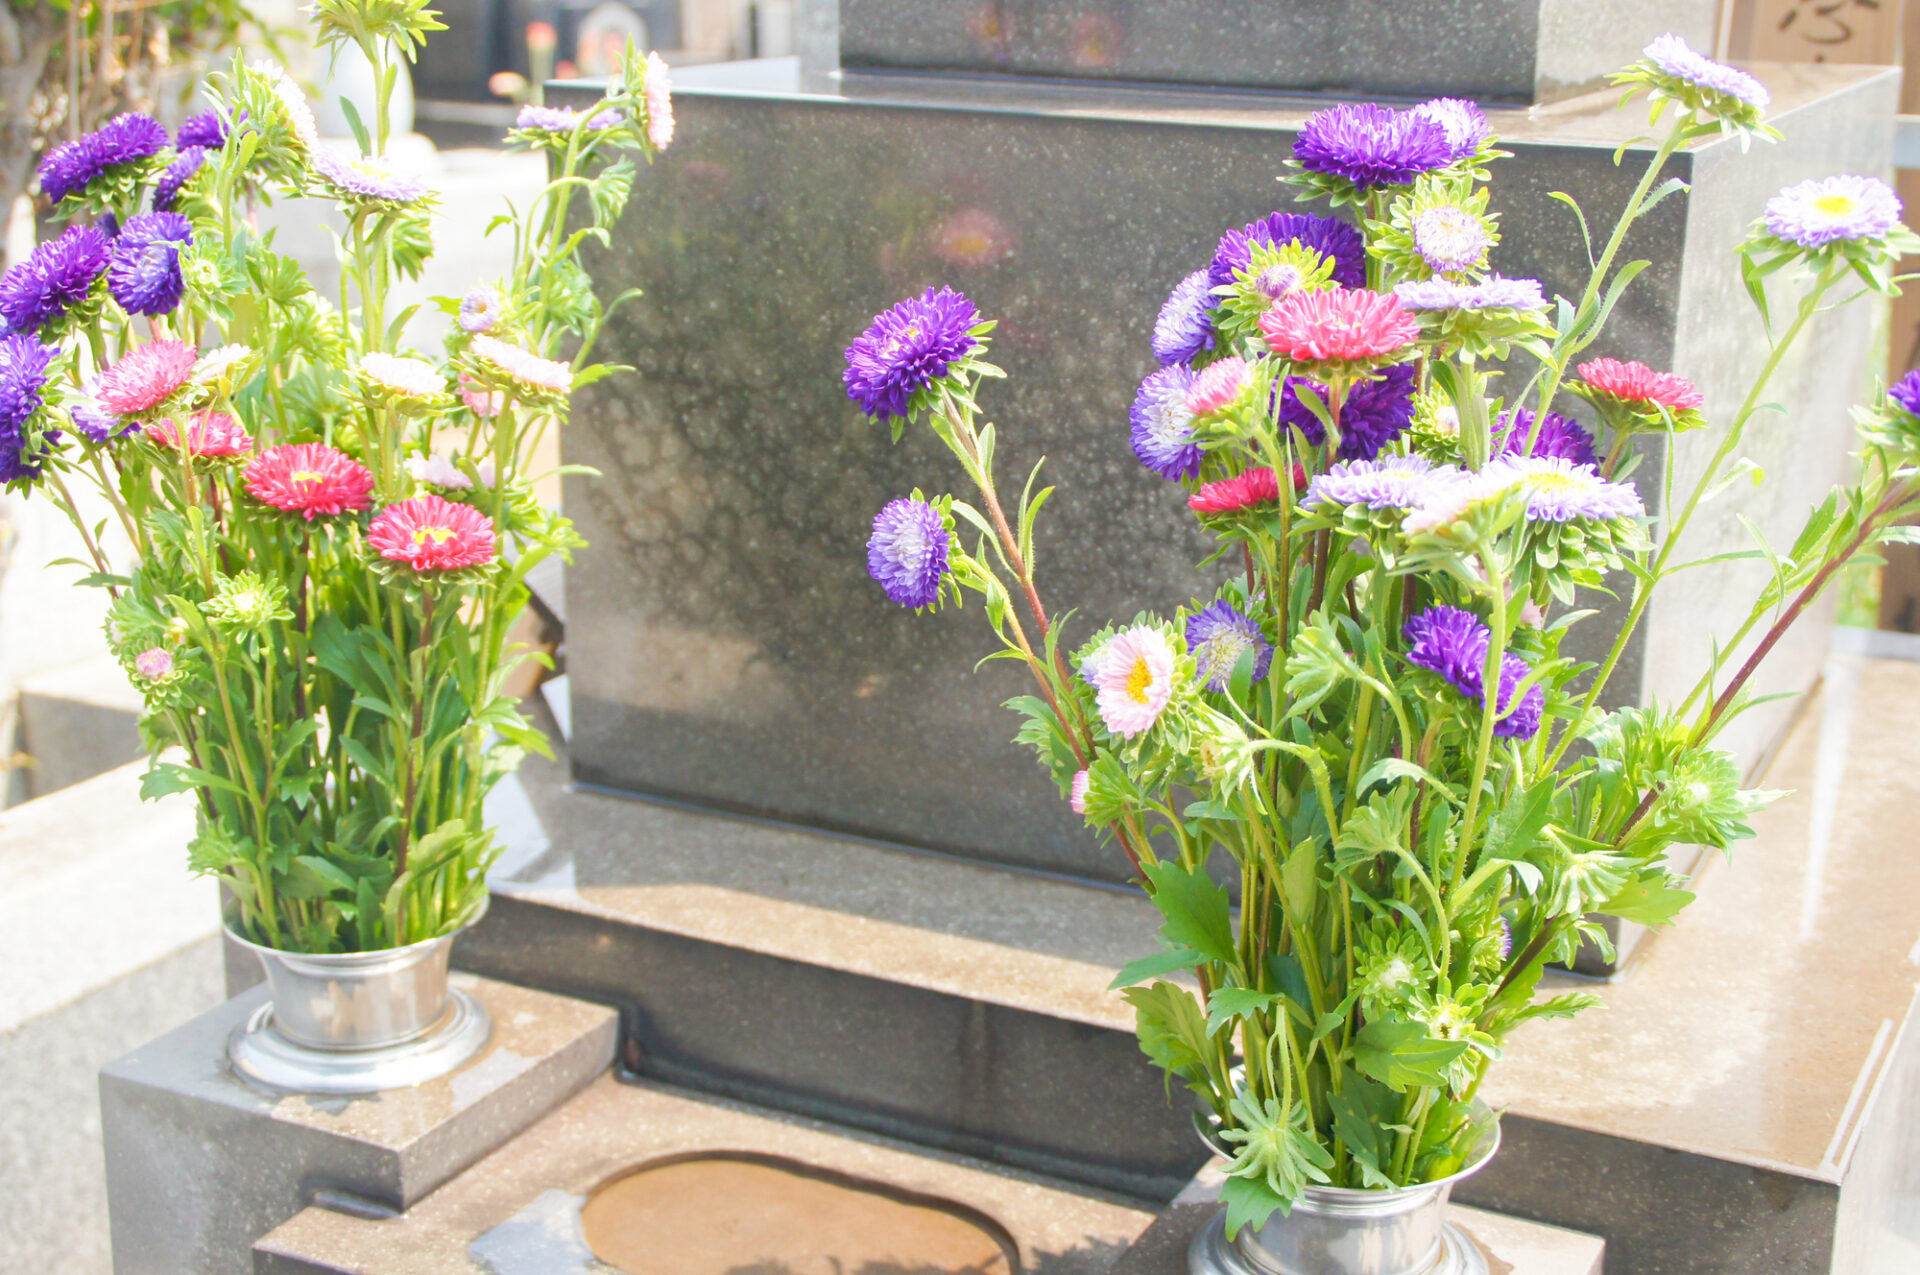 お墓の前に飾られているお花